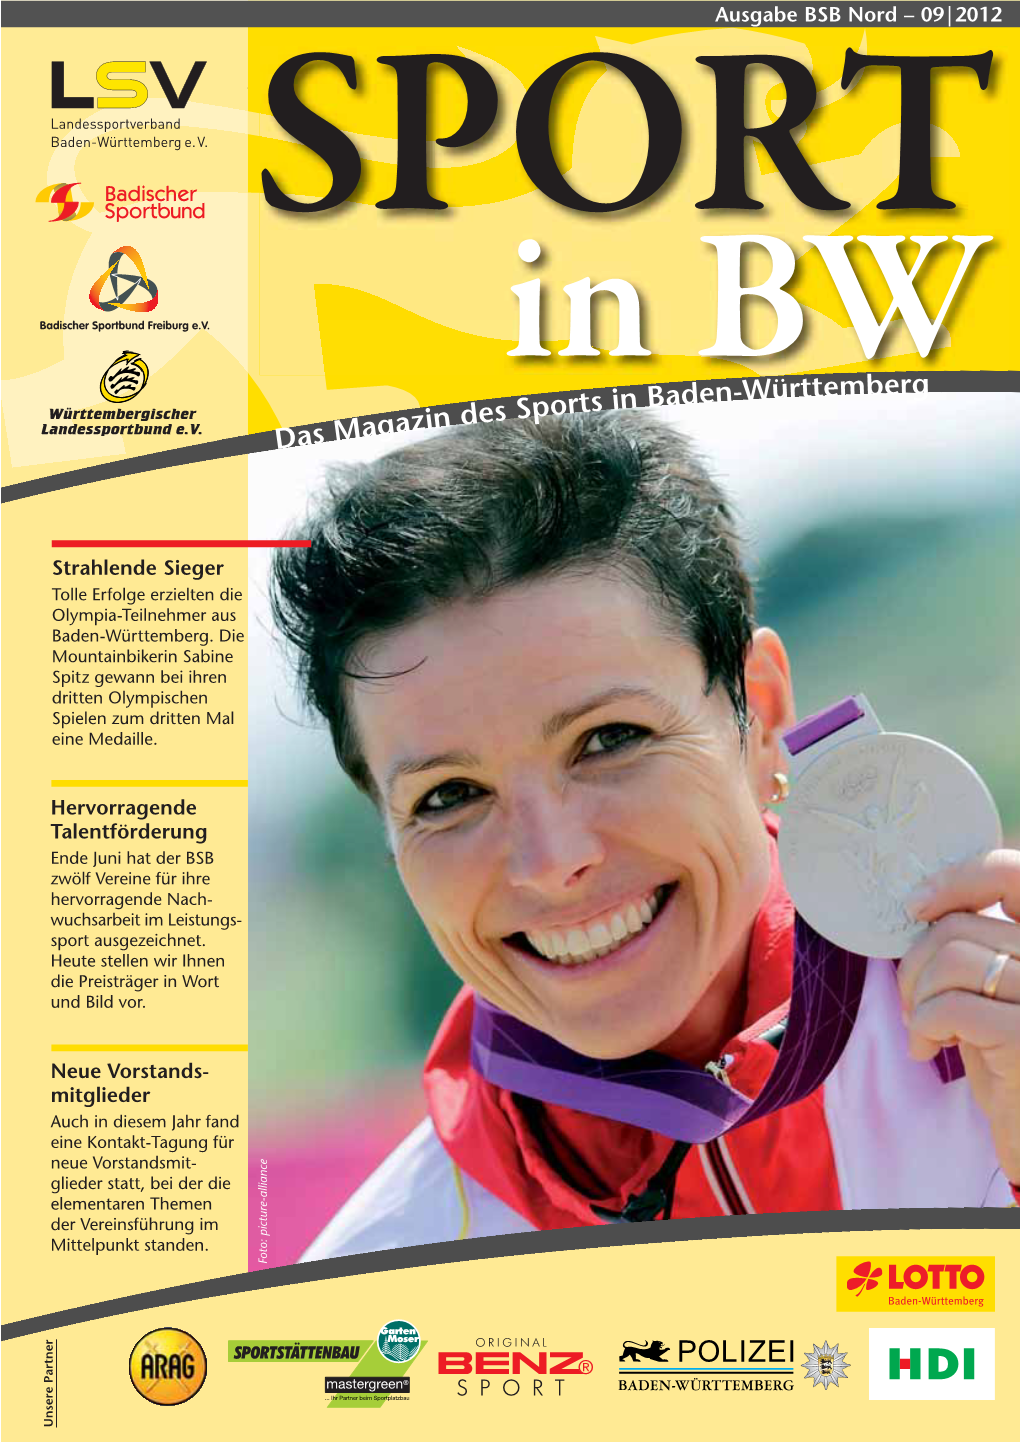 Das Magazin Des Sports in Baden-Württemberg